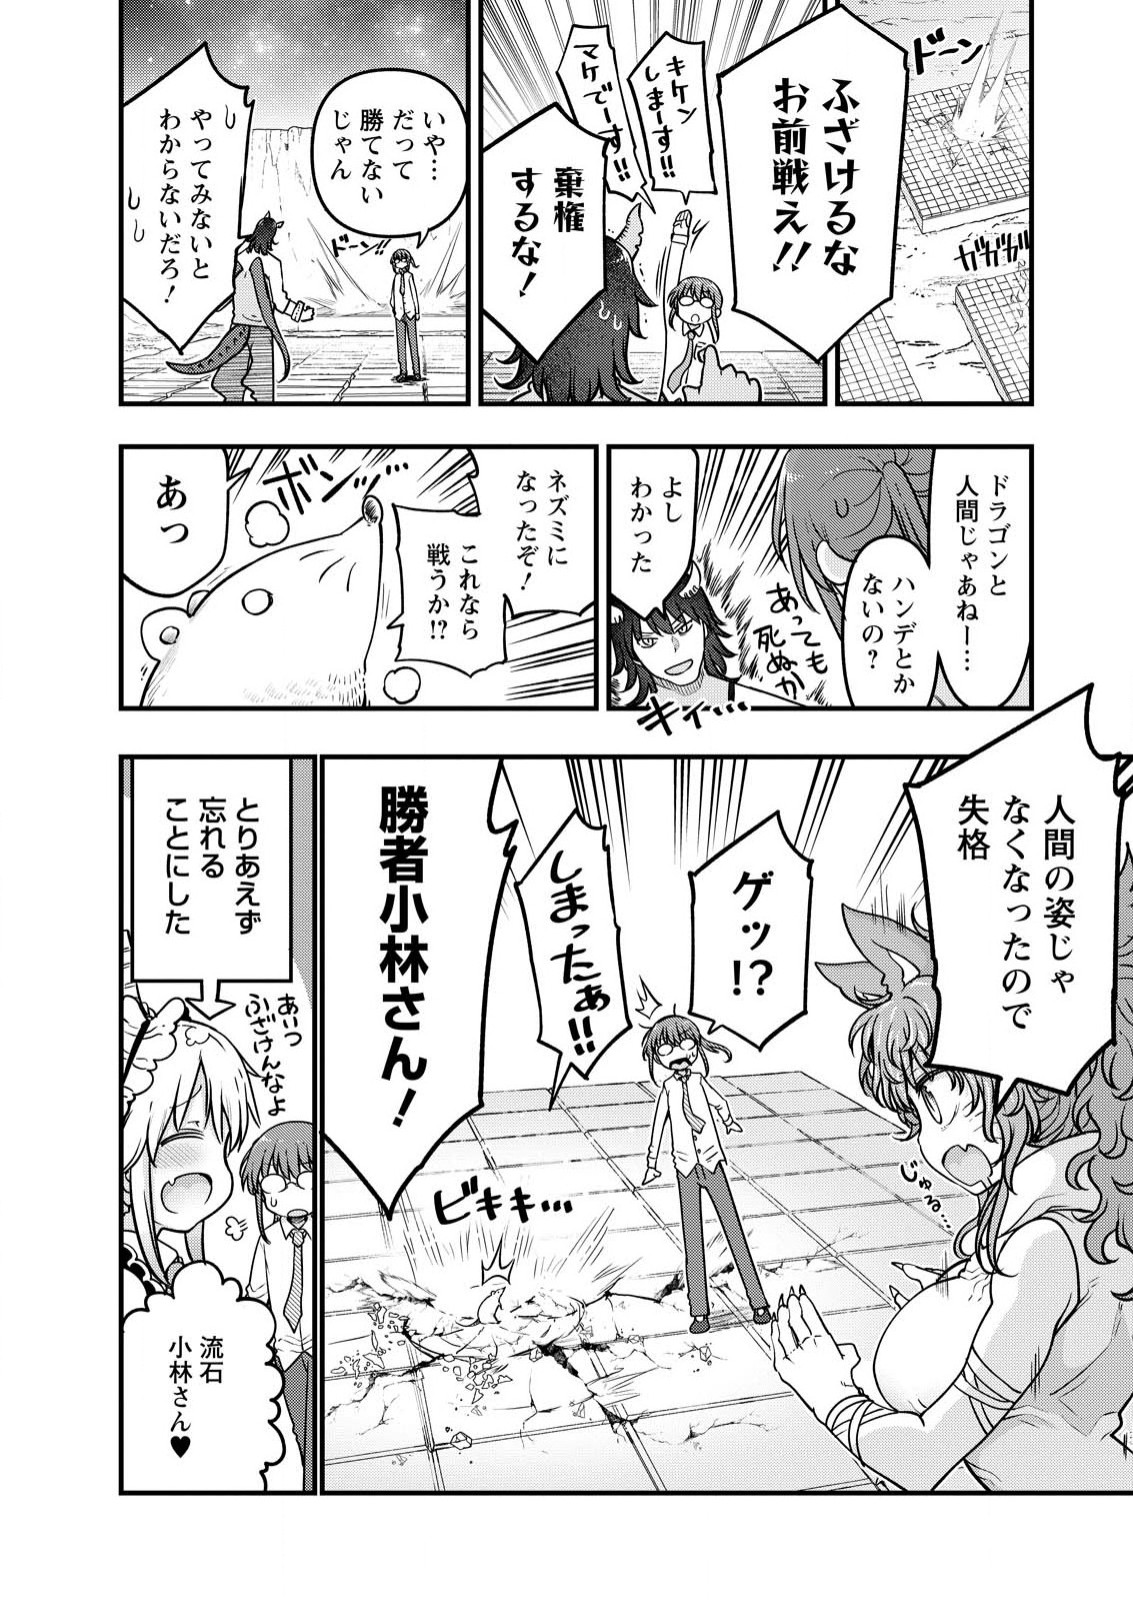 Kobayashi-san Chi no Maid Dragon - Chapter 142 - Page 14